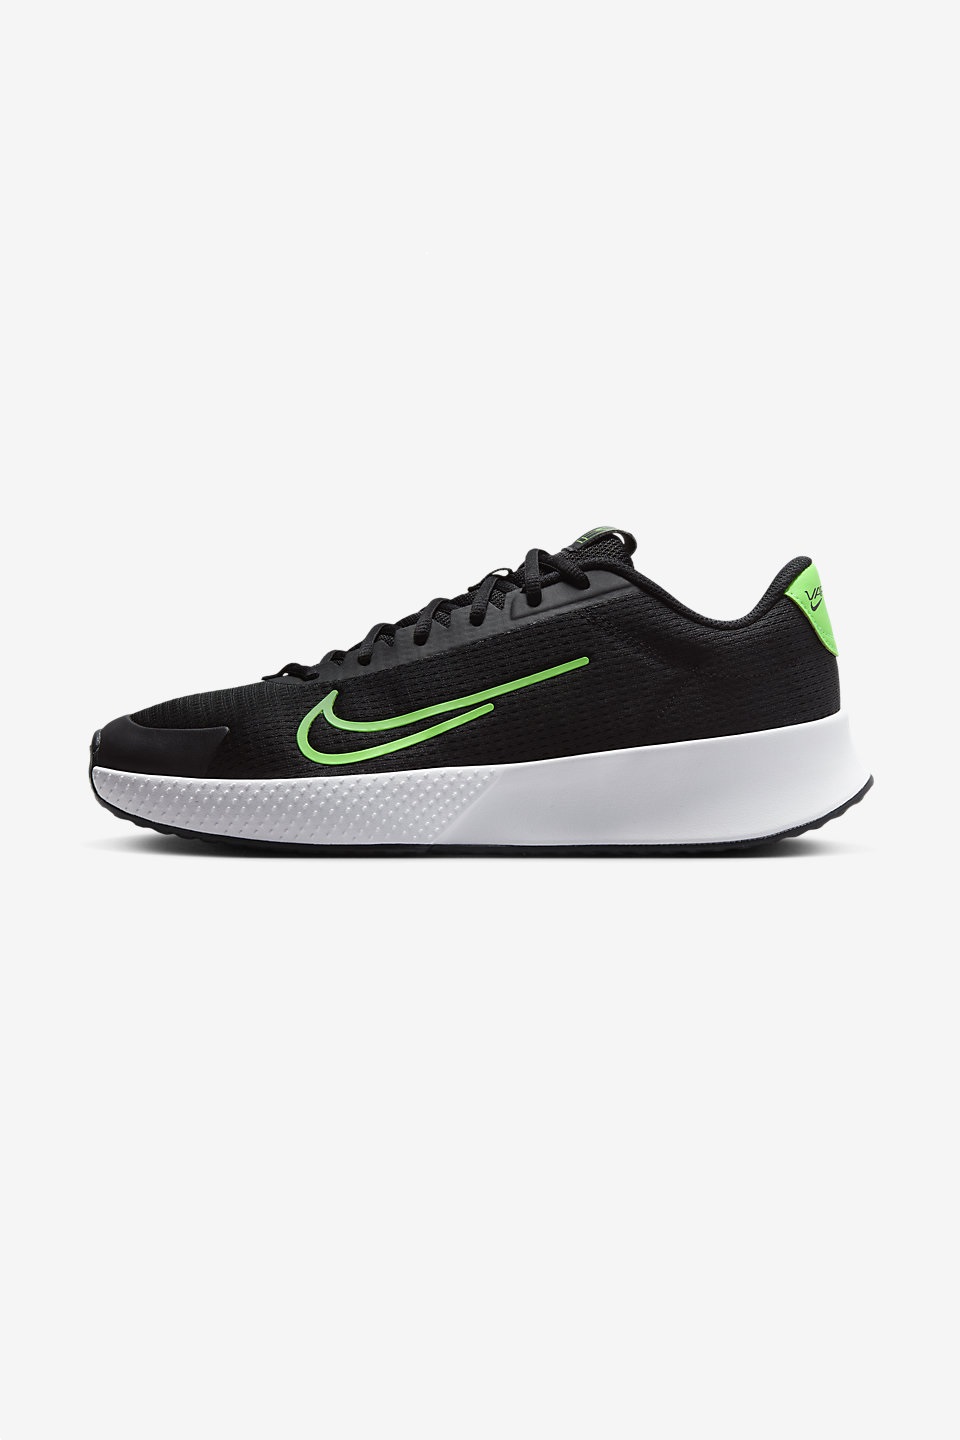 NIKE - NikeCourt Vapor Lite 2 Erkek Sert Kort Tenis Ayakkabısı 